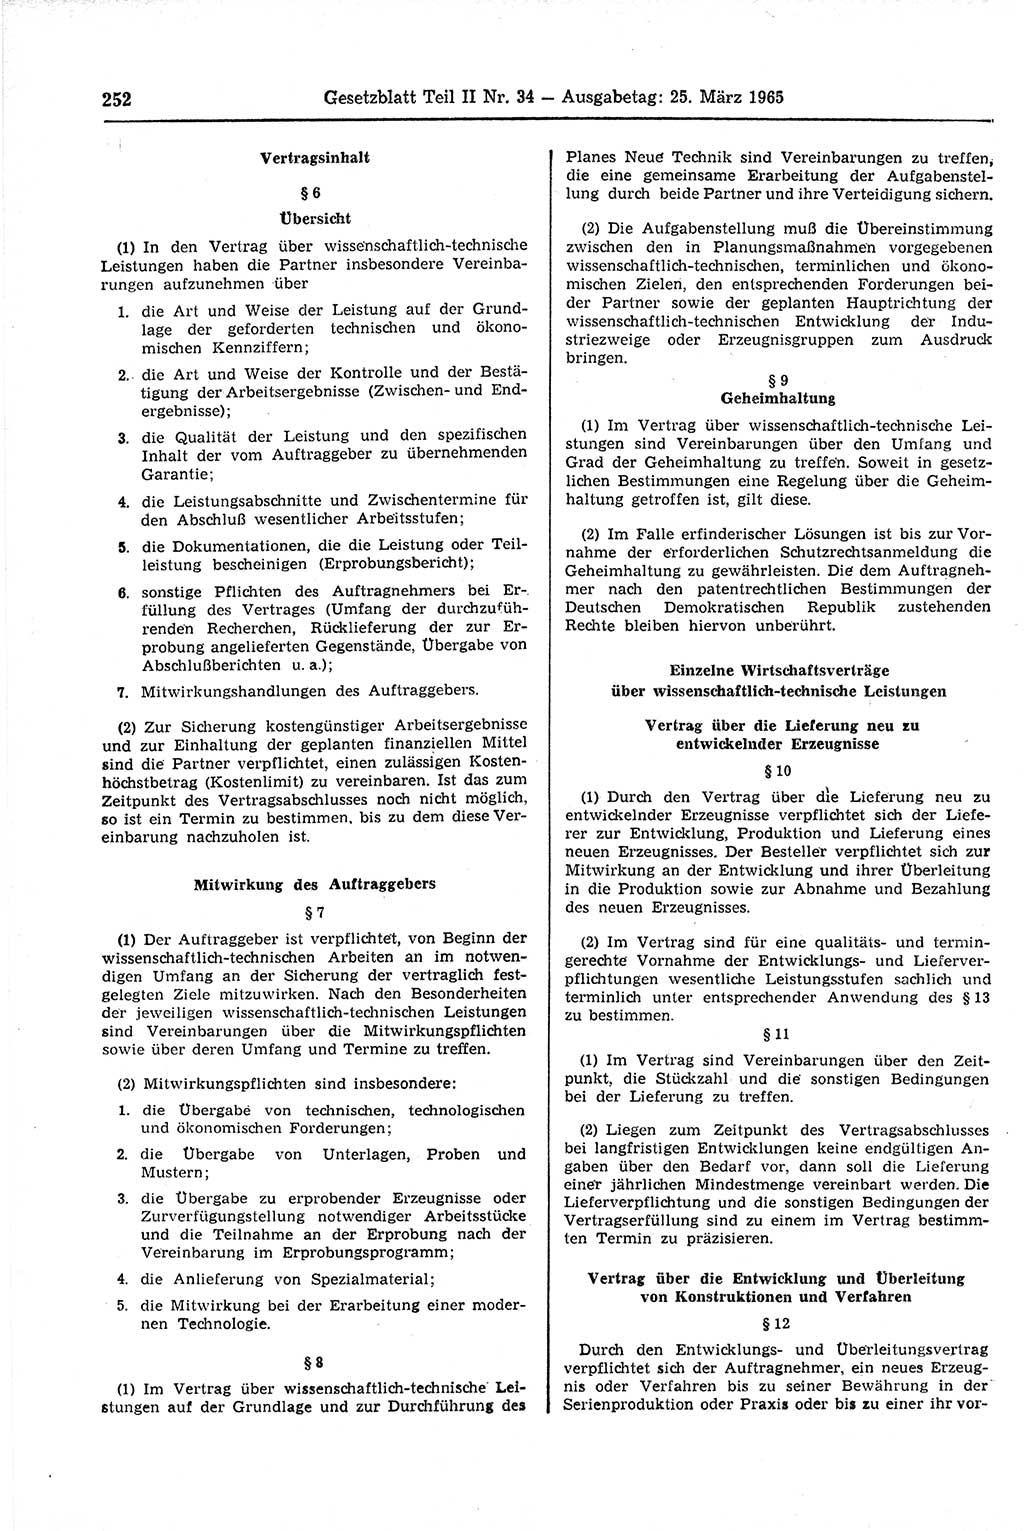 Gesetzblatt (GBl.) der Deutschen Demokratischen Republik (DDR) Teil ⅠⅠ 1965, Seite 252 (GBl. DDR ⅠⅠ 1965, S. 252)